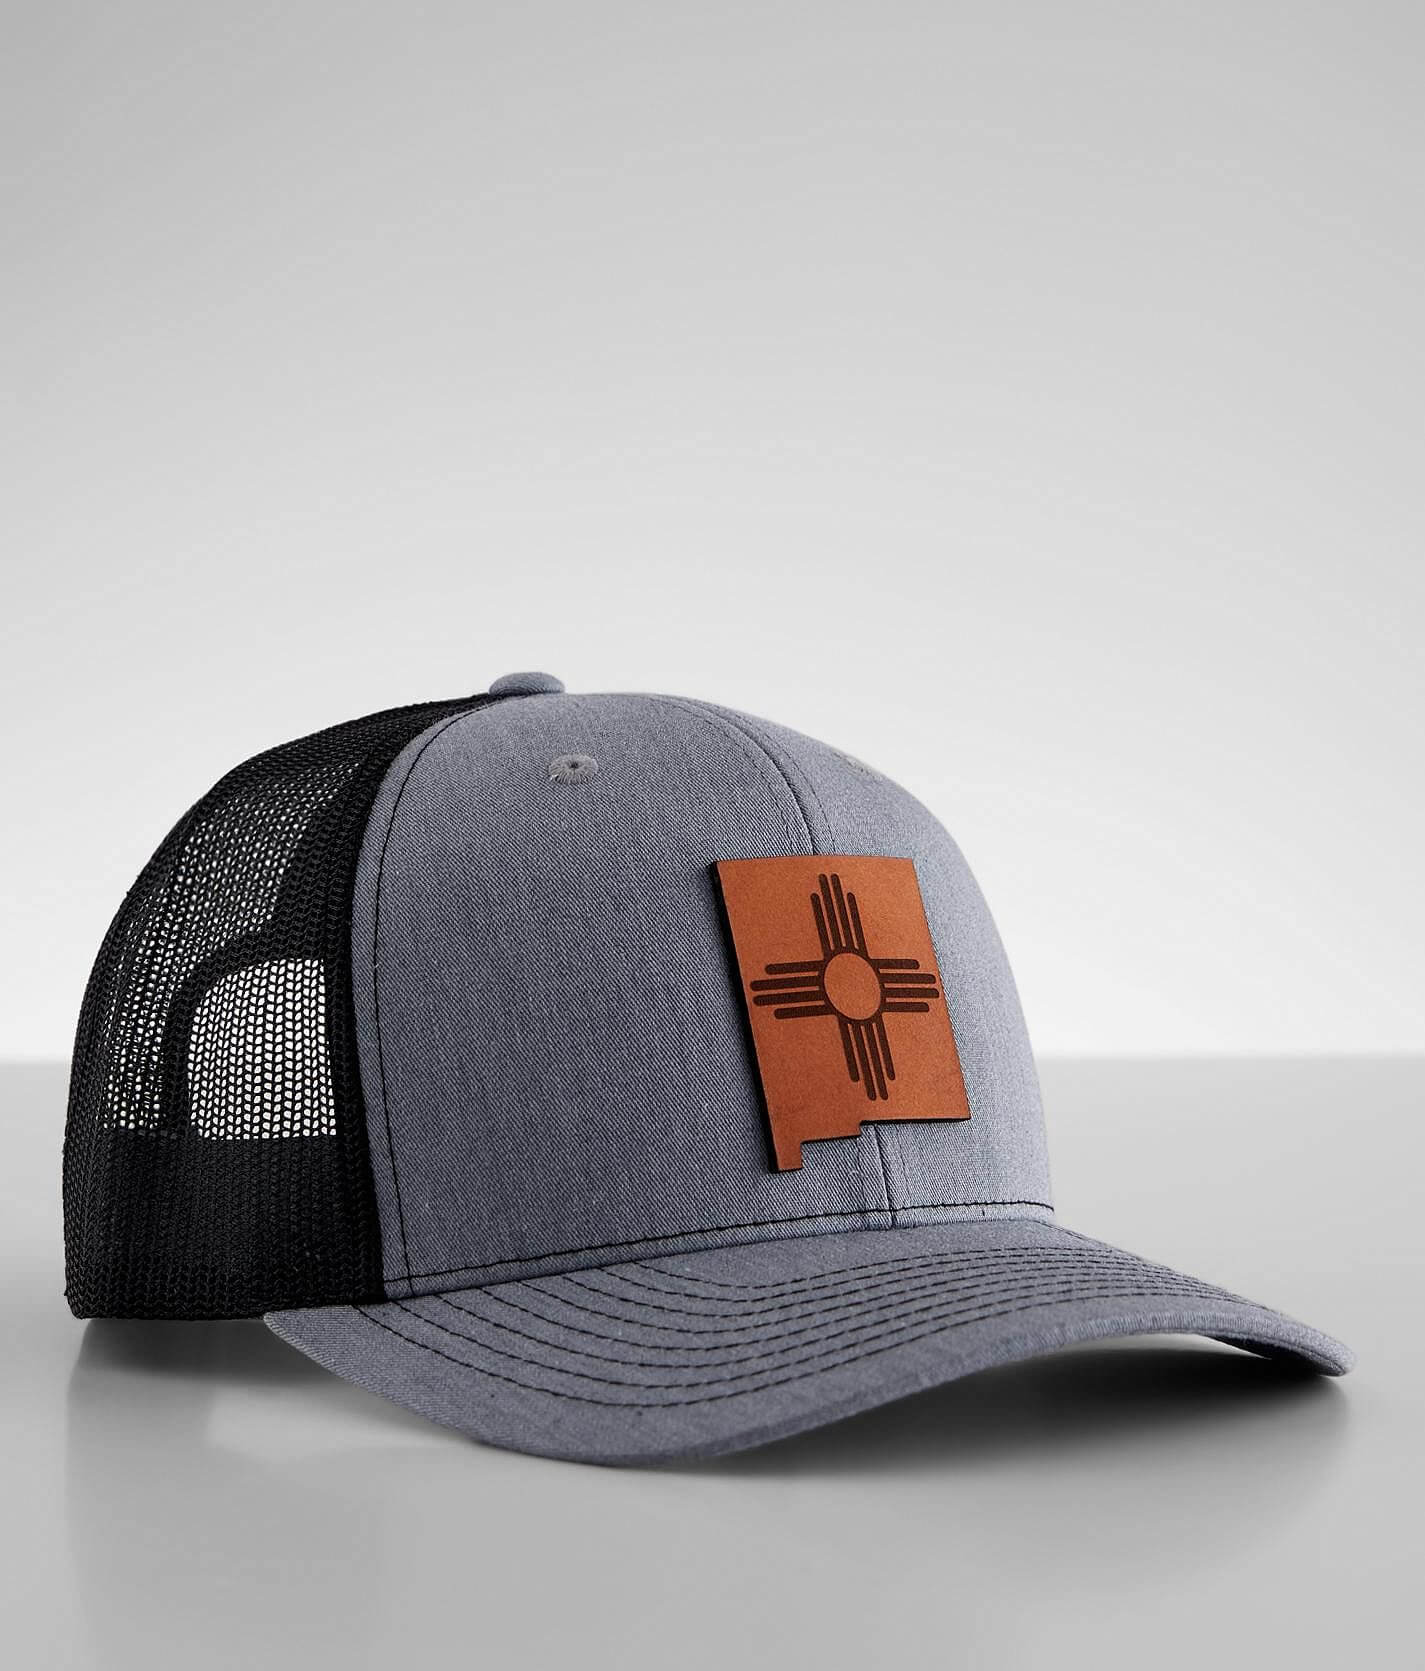 Branded Bills Louisiana Rogue Trucker Hat - Men's Hats in Heather Grey